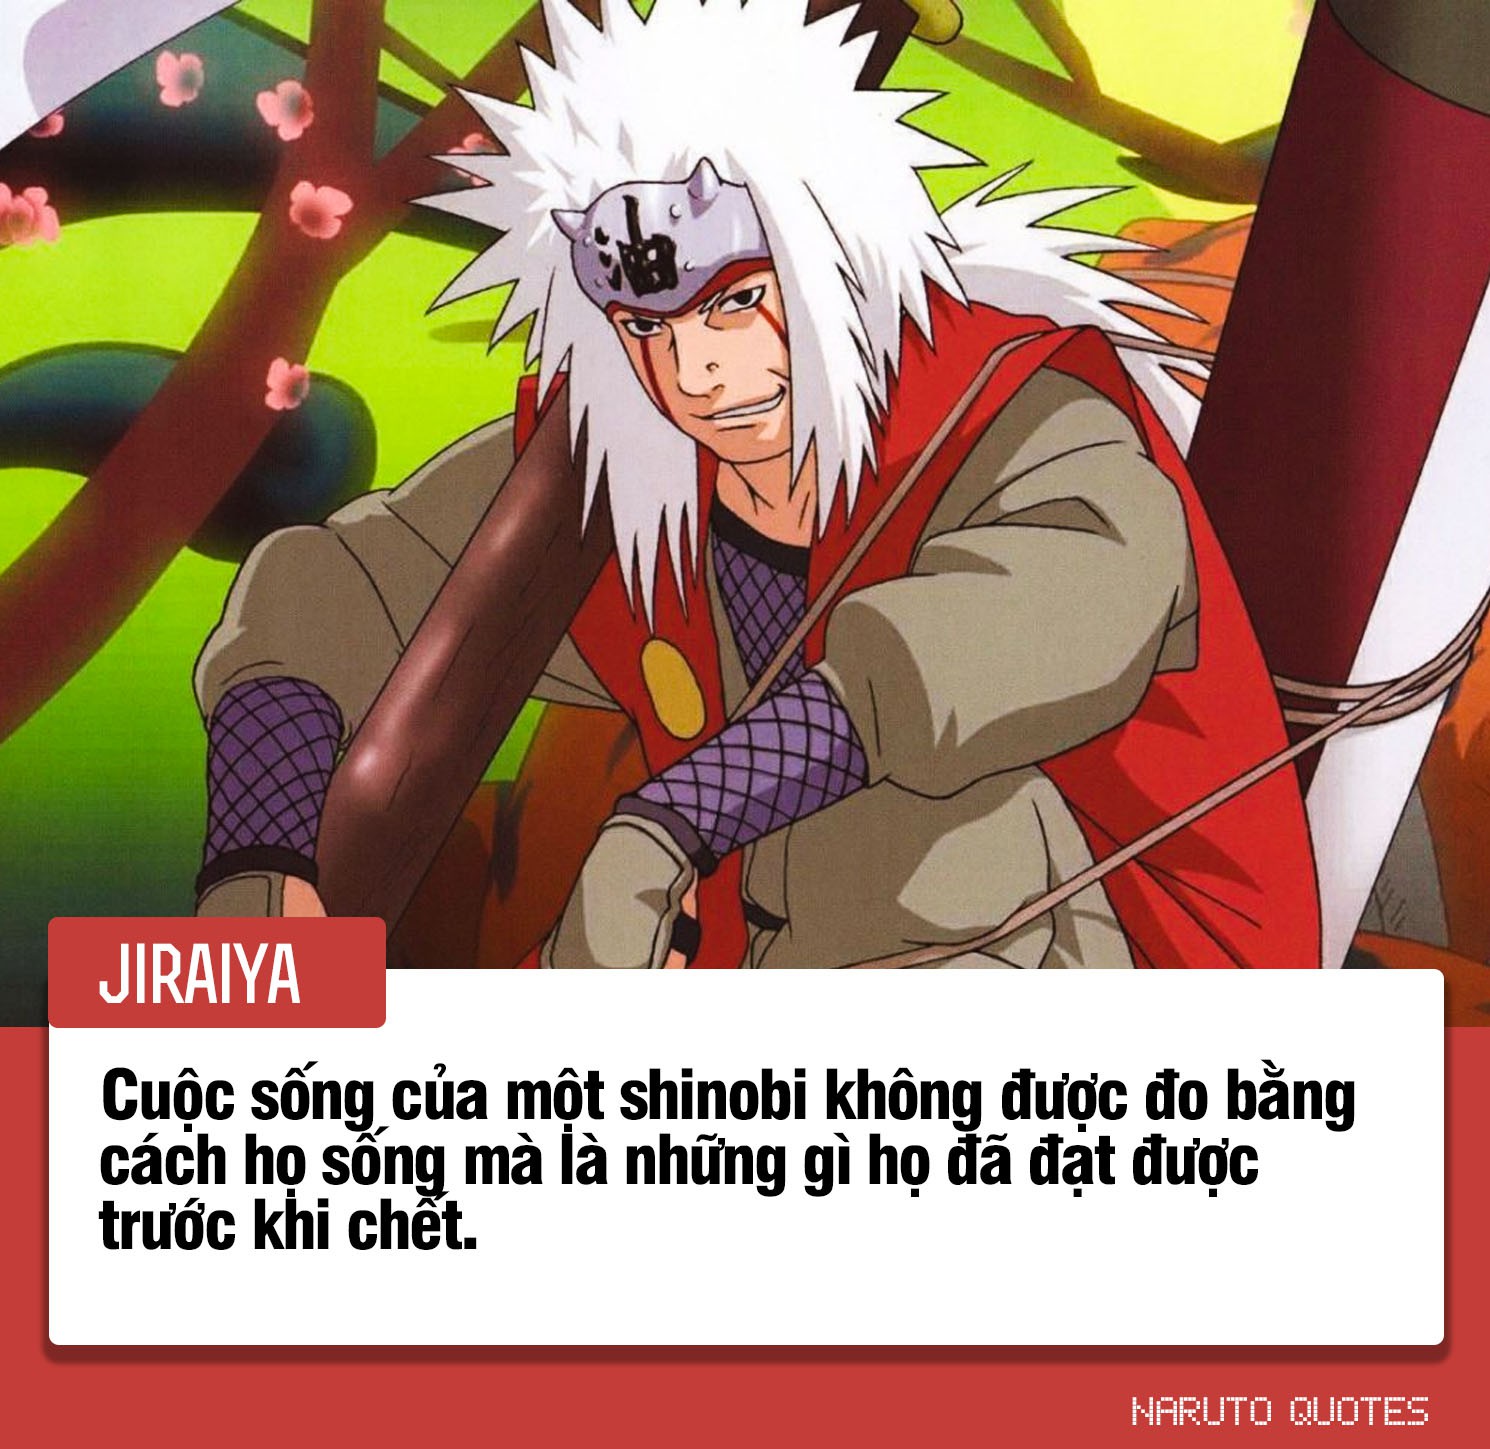 10 câu nói ý nghĩa của các nhân vật trong Naruto, câu thứ 3 sẽ là động lực giúp nhiều người phấn đấu - Ảnh 2.